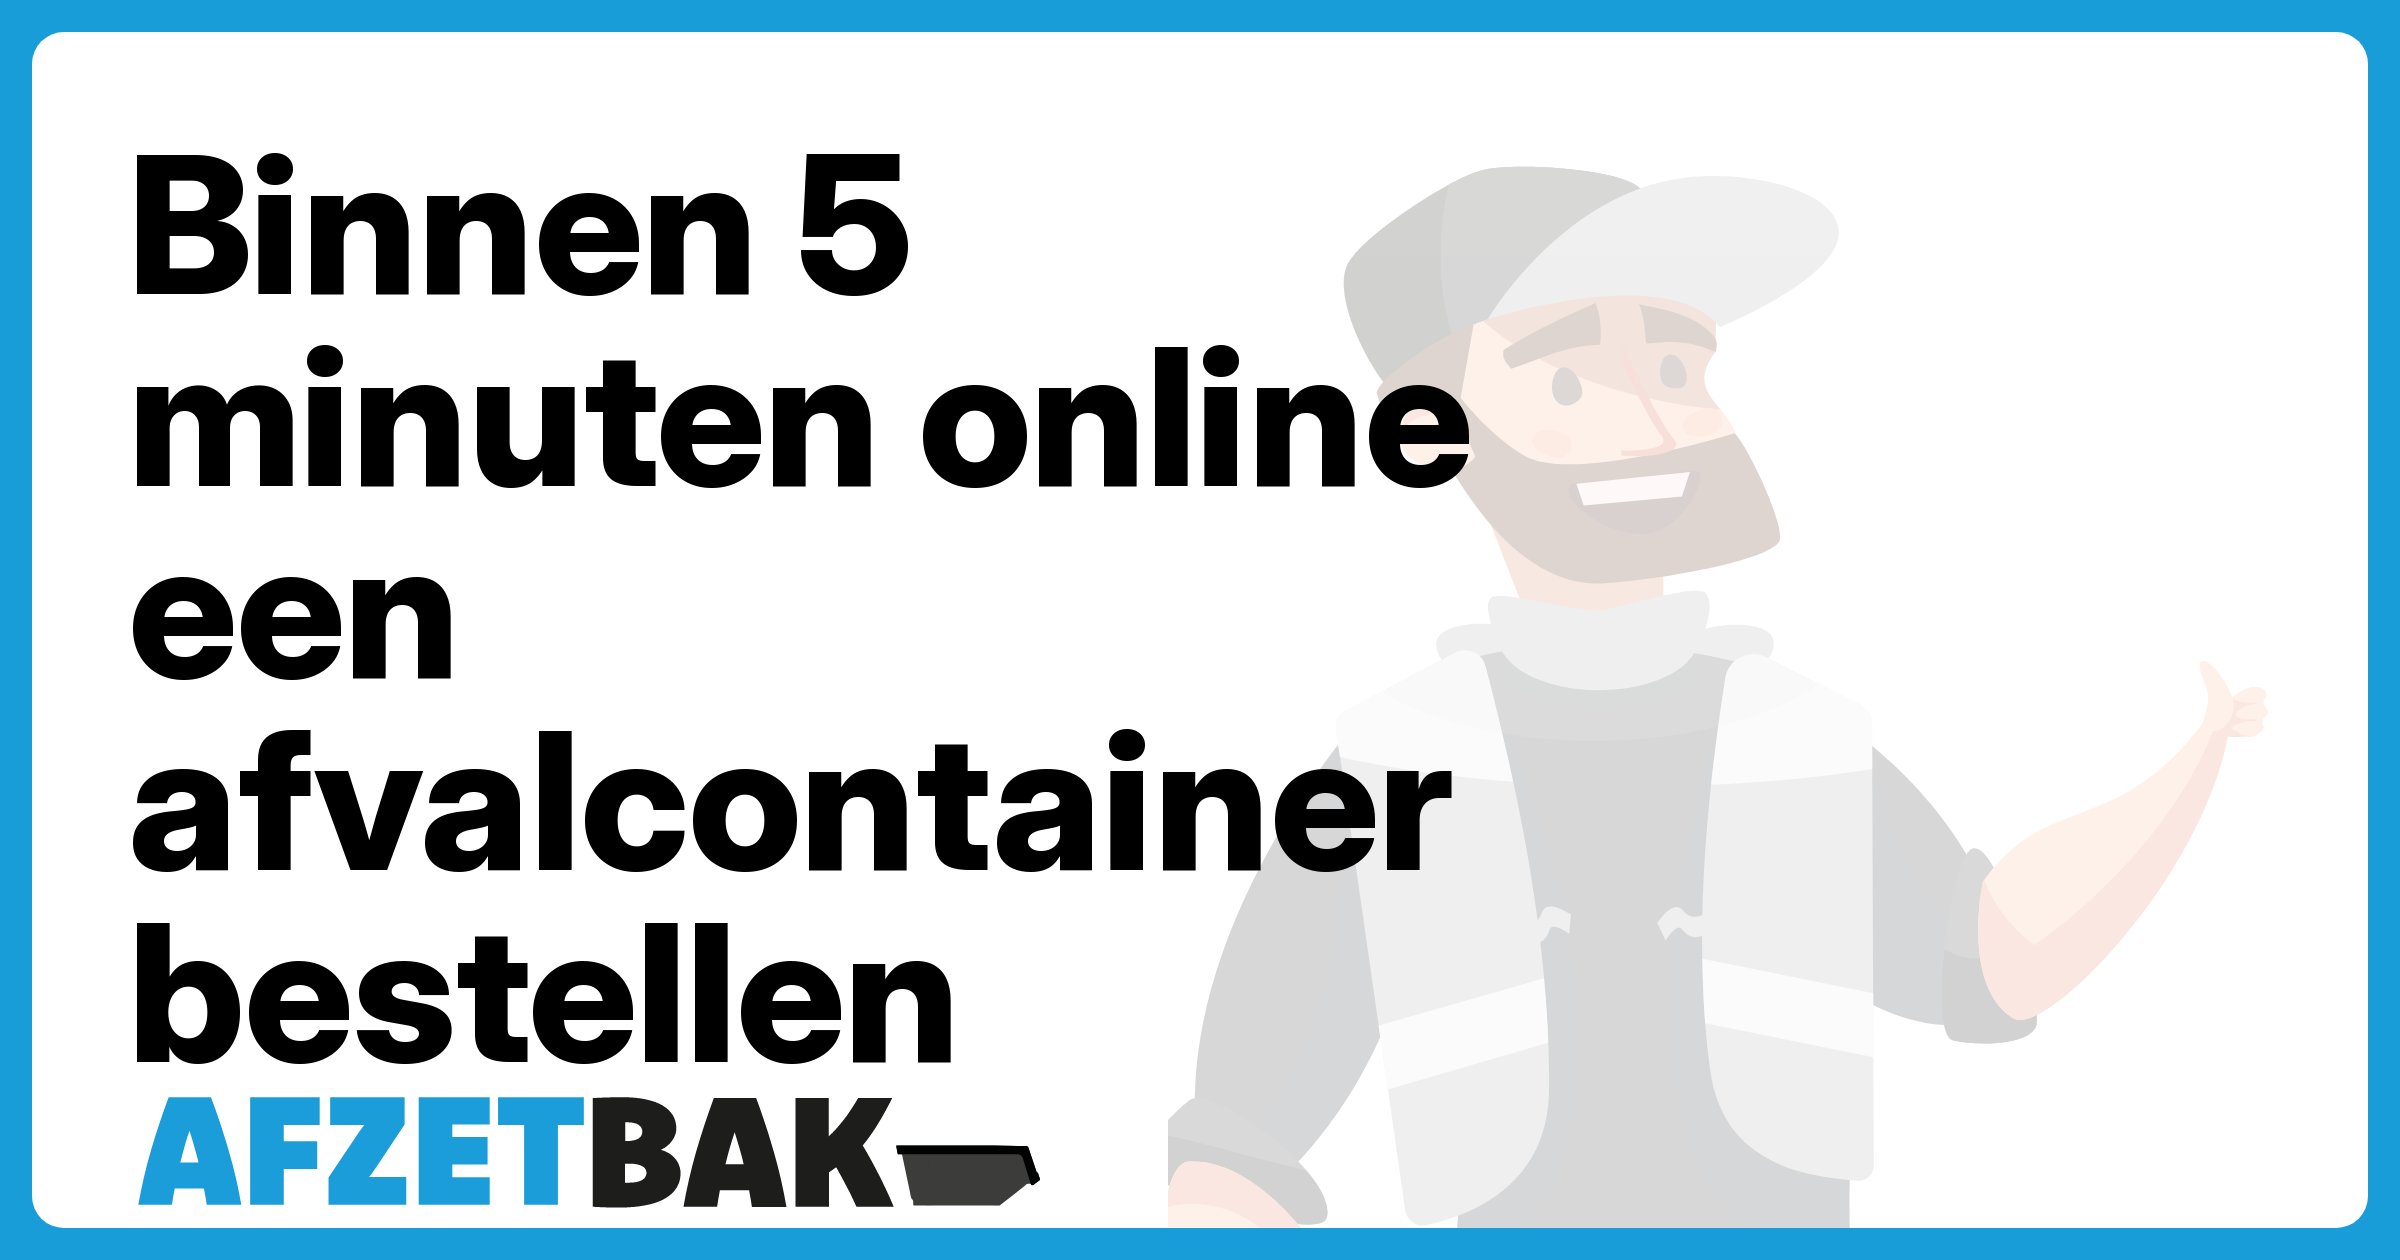 Binnen 5 minuten online een afvalcontainer bestellen - Afzetbak.nl